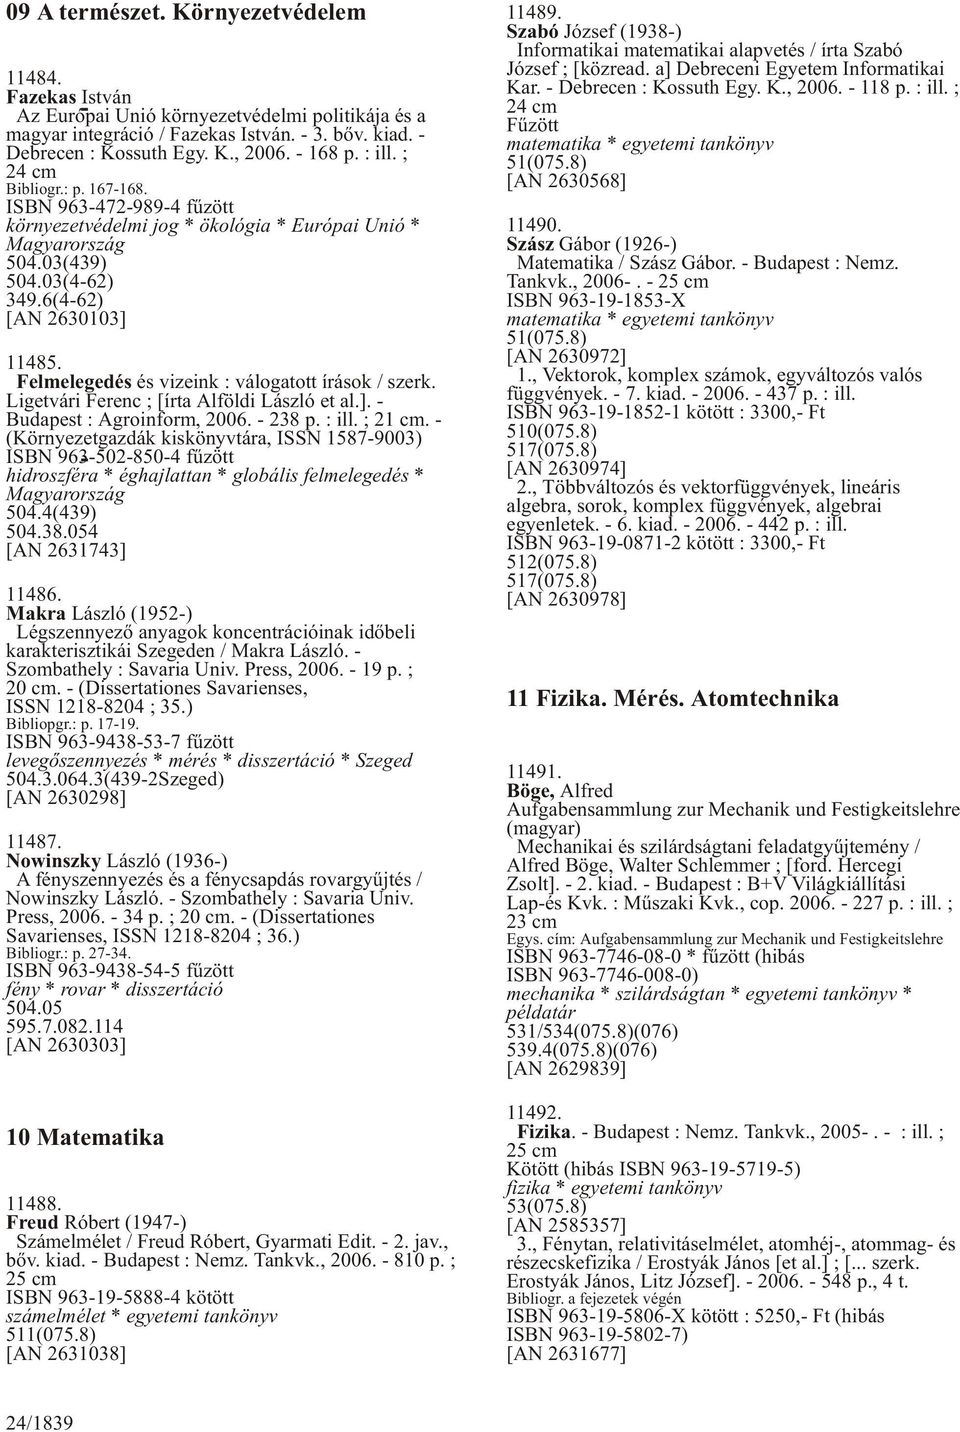 Felmelegedés és vizeink : válogatott írások / szerk. Ligetvári Ferenc ; [írta Alföldi László et al.]. - Budapest : Agroinform, 2006. - 238 p. : ill. ; 21 cm.